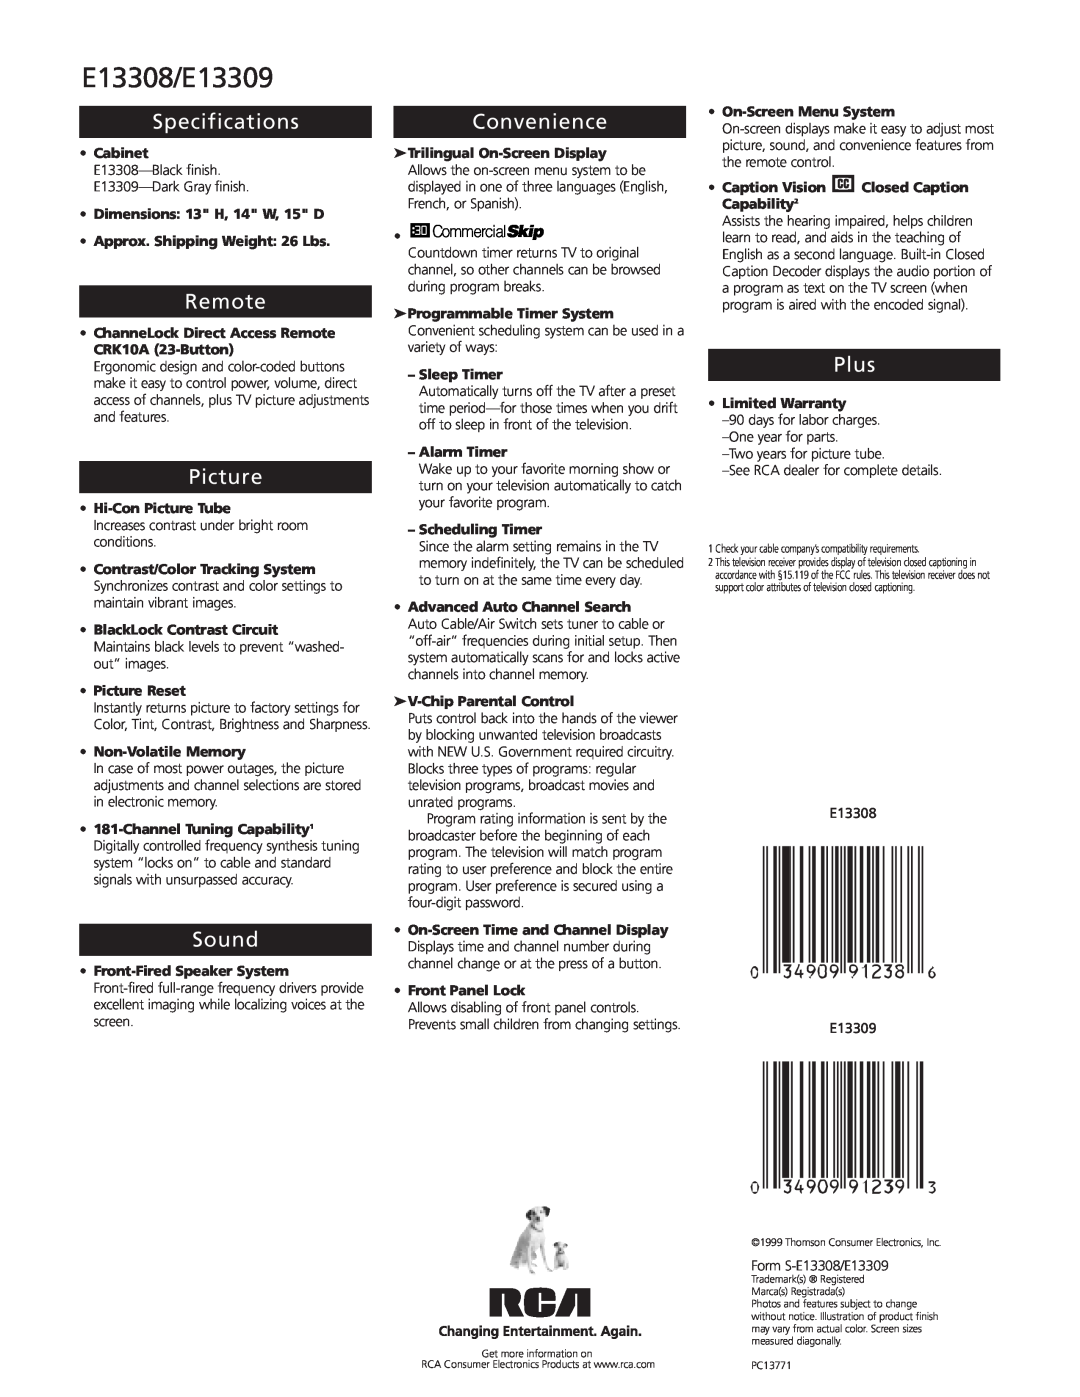 RCA manual E13308/E13309, Specifications, Remote, Picture, Sound, Convenience, Plus, CommercialSkip 